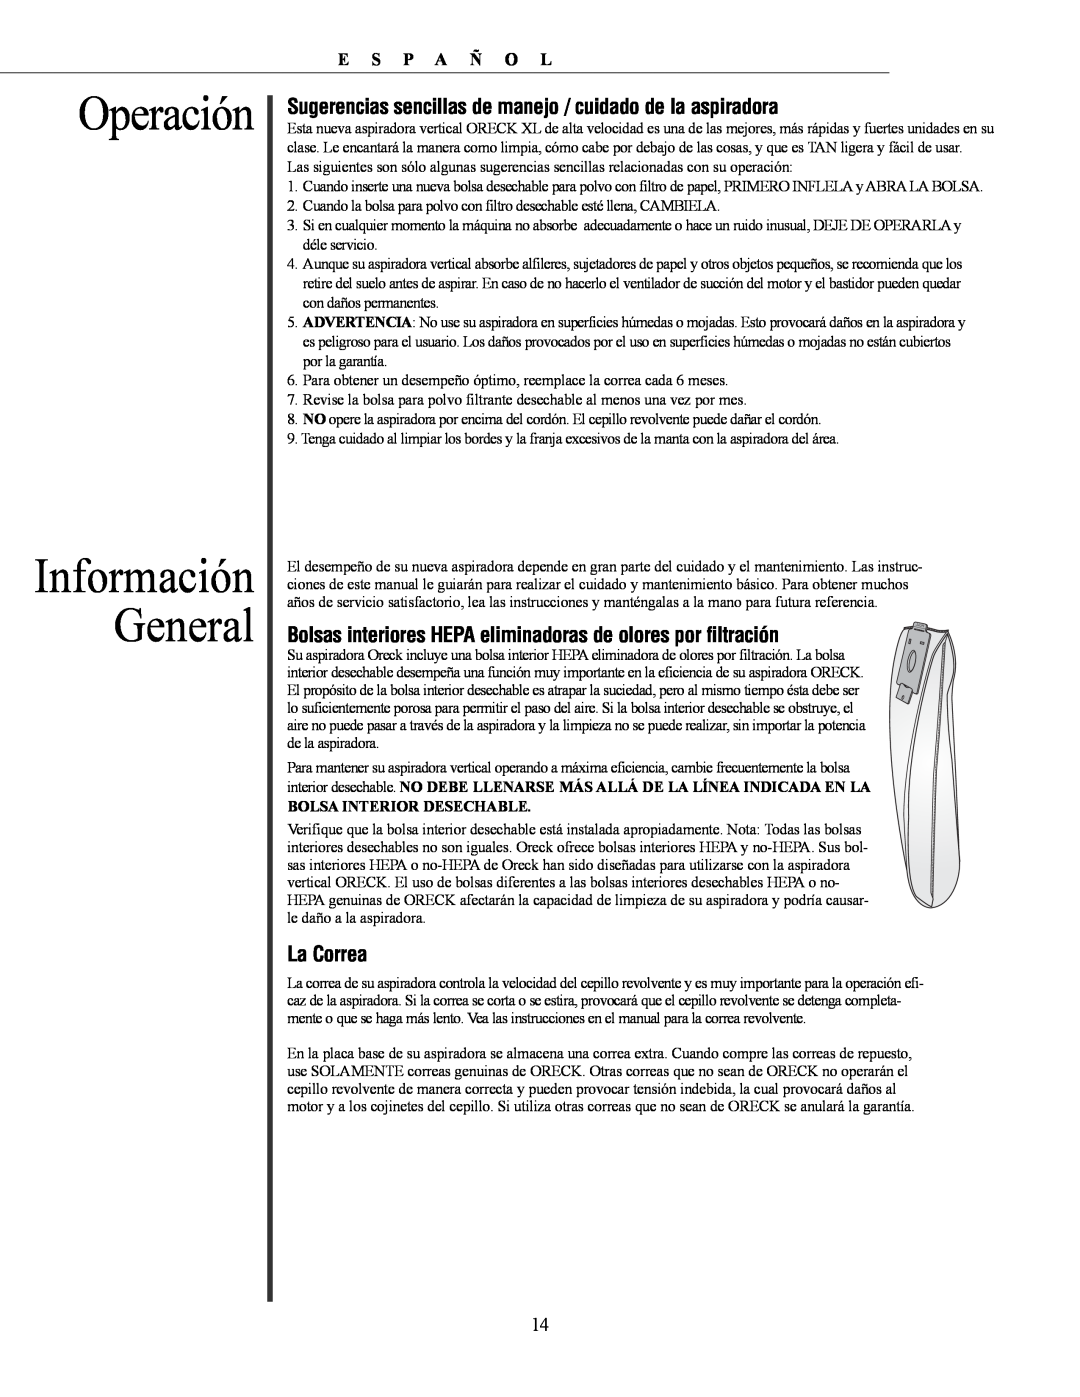 Oreck David manual Información General, Operación 